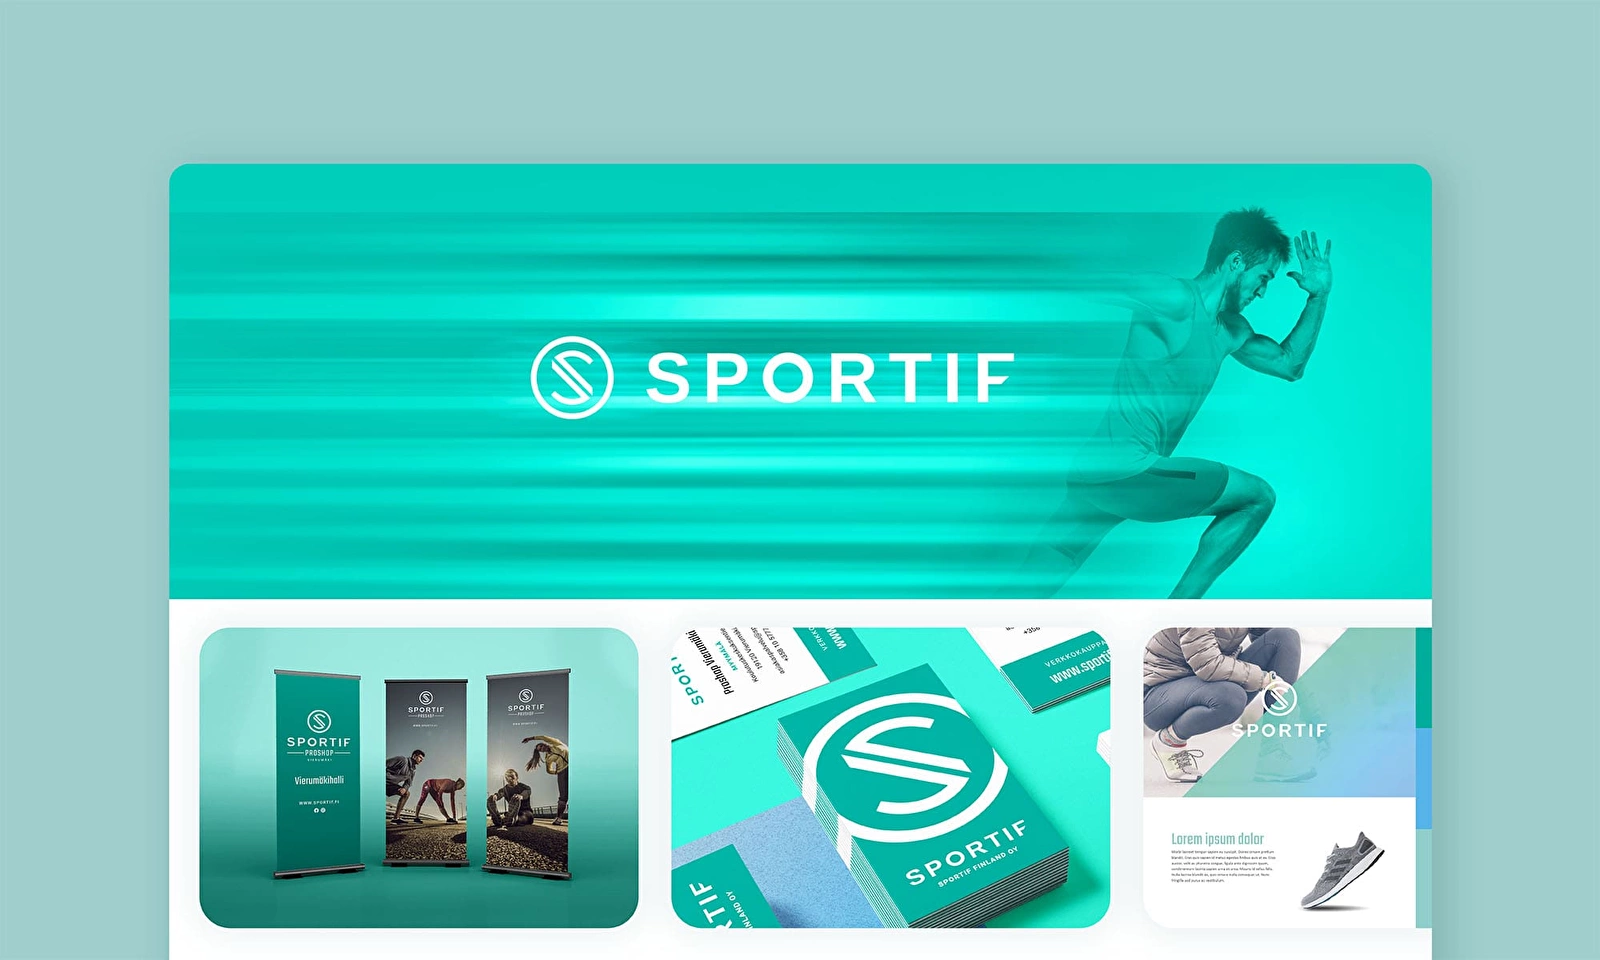 Sportifin yritysilme ja markkinointimateriaaleja, sisältäen muun muassa roll-upit ja käyntikortit.